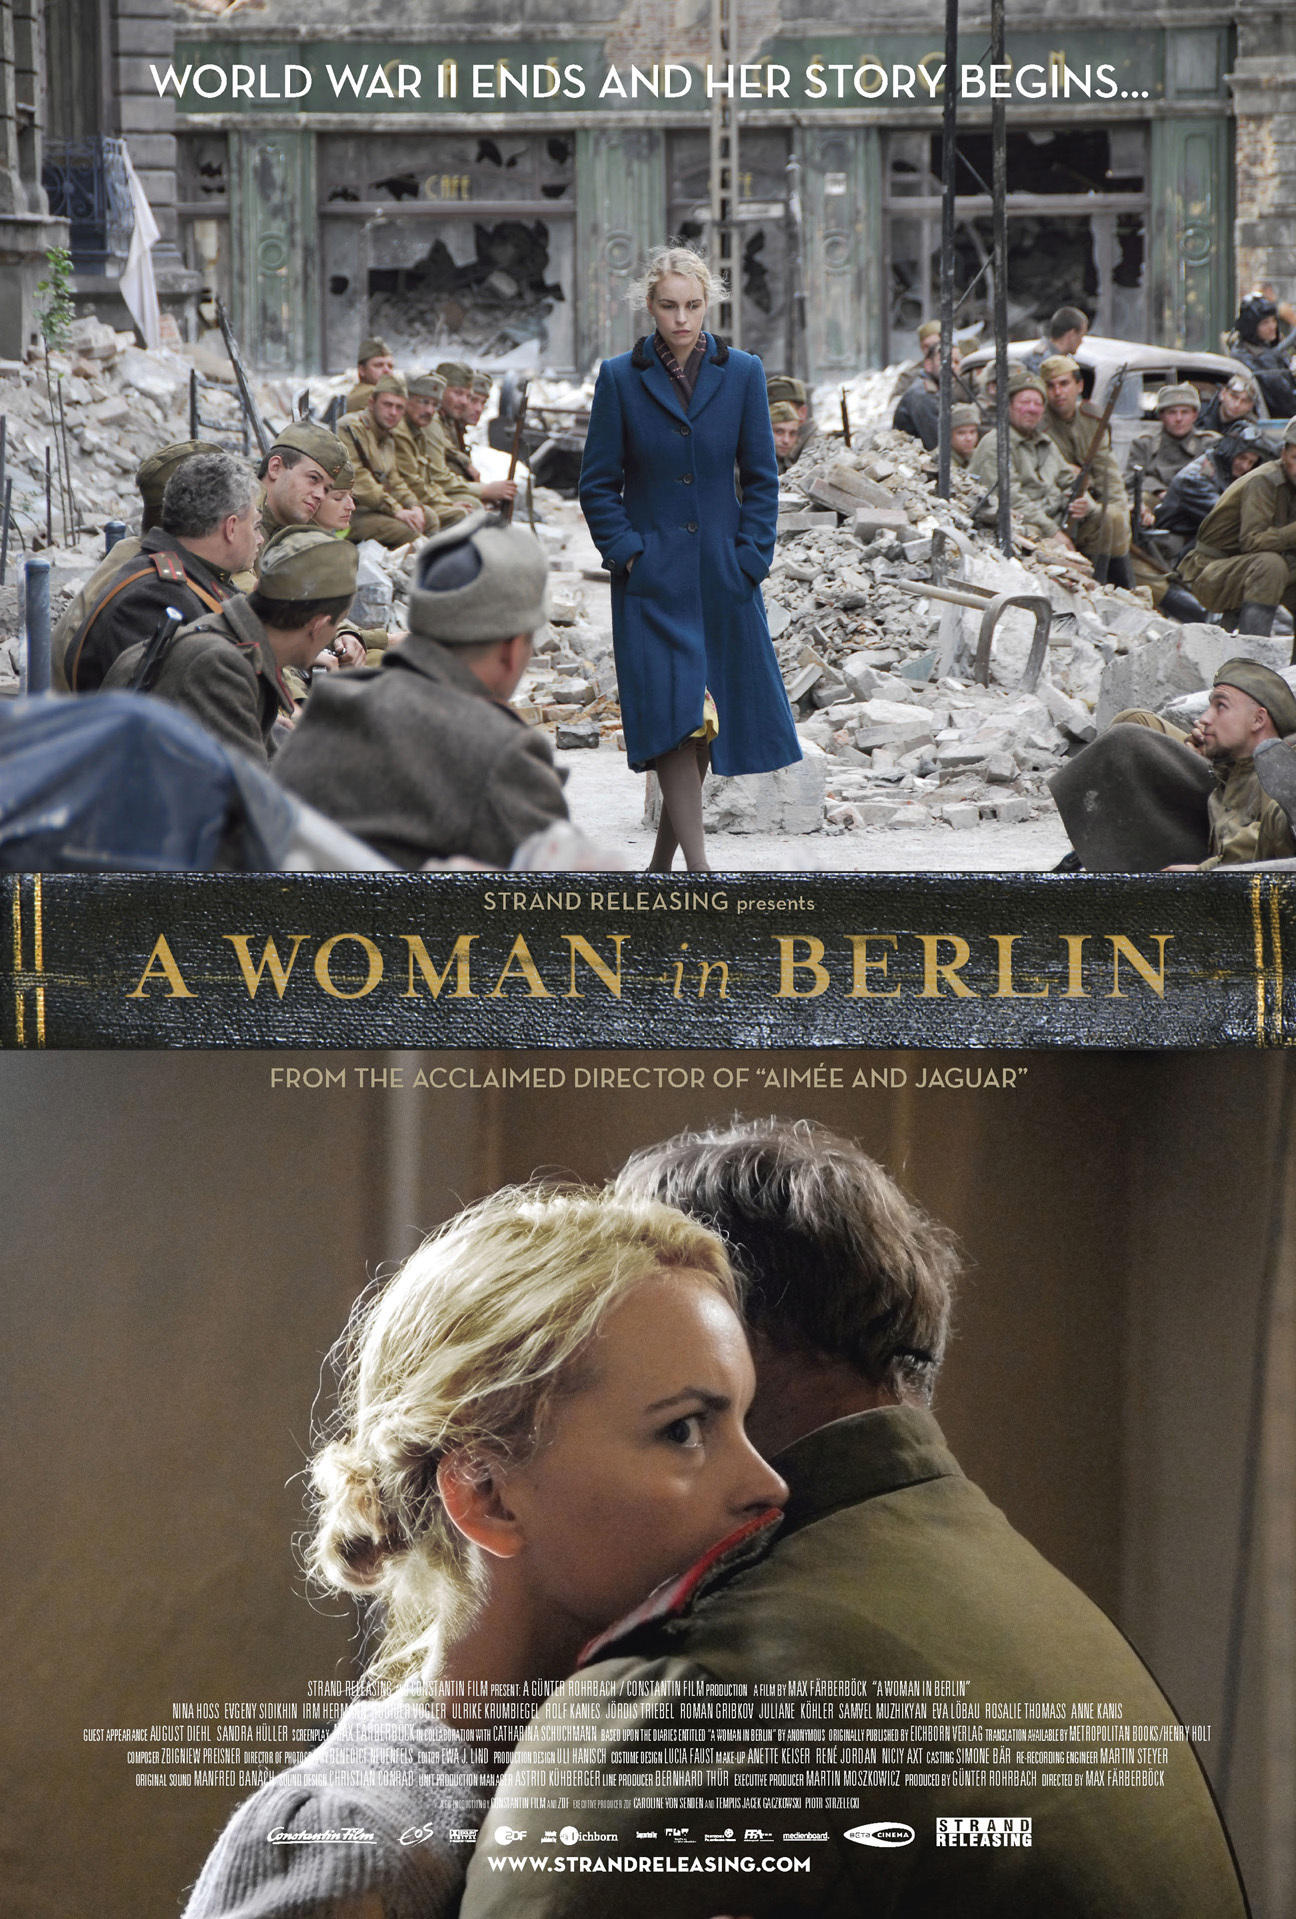 柏林的女人anonyma–einefrauinberlin又名awomaninberlin2008